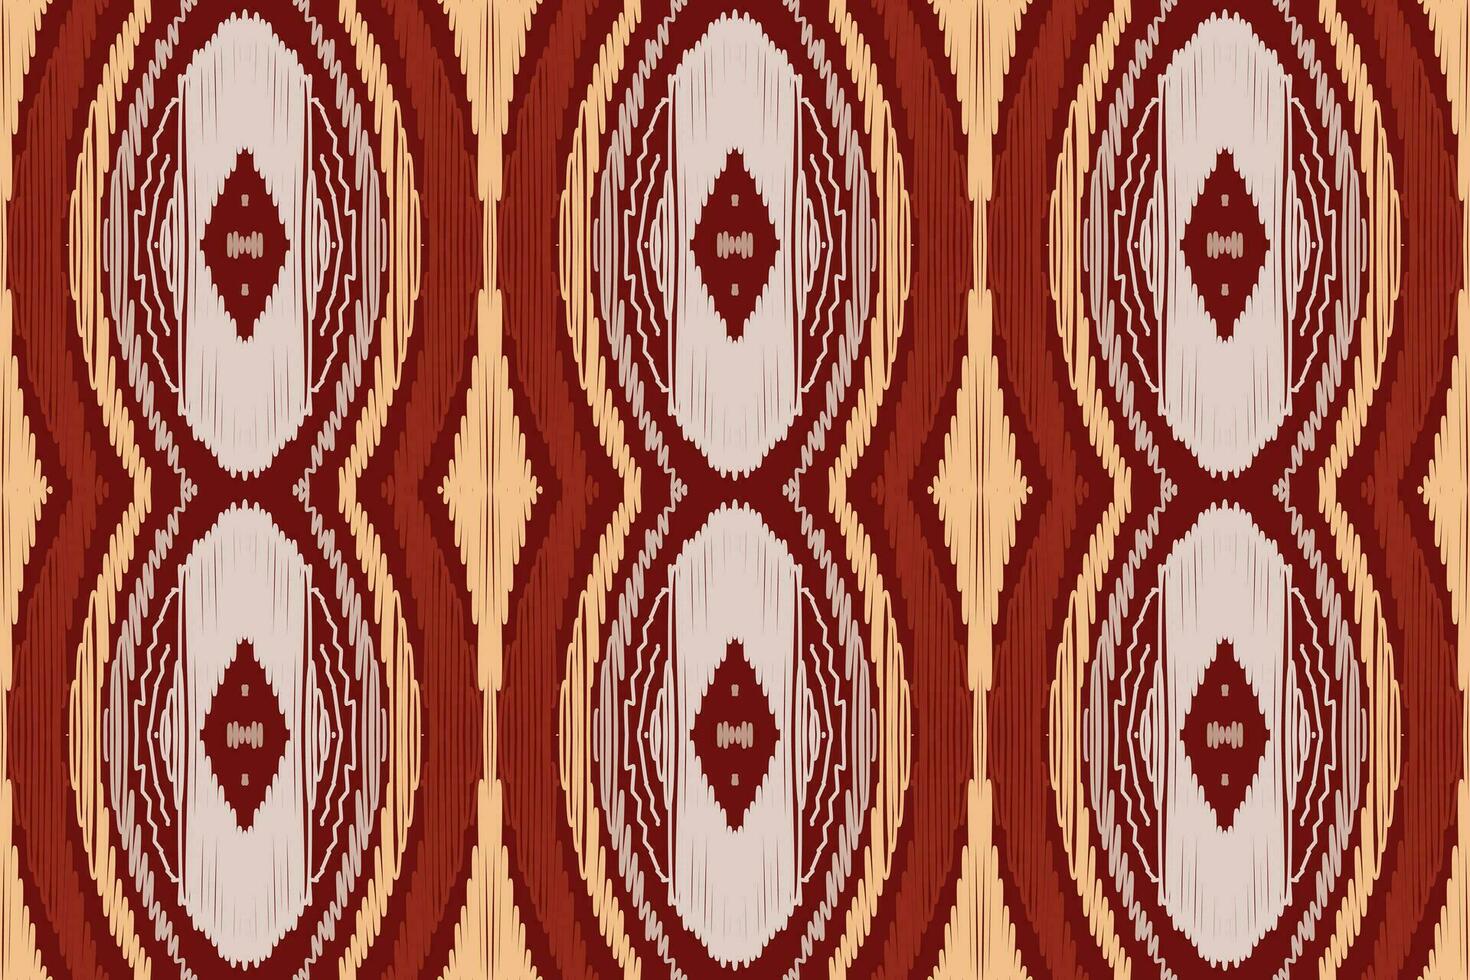 amerikanisch ethnisch einheimisch Muster.traditionell Navajo, Azteken, Apache, Südwesten und Mexikaner Stil Stoff Muster.abstrakt Vektor Motive Musterdesign zum Stoff, Kleidung, Decke, Teppich, gewebt, wickeln, Dekoration